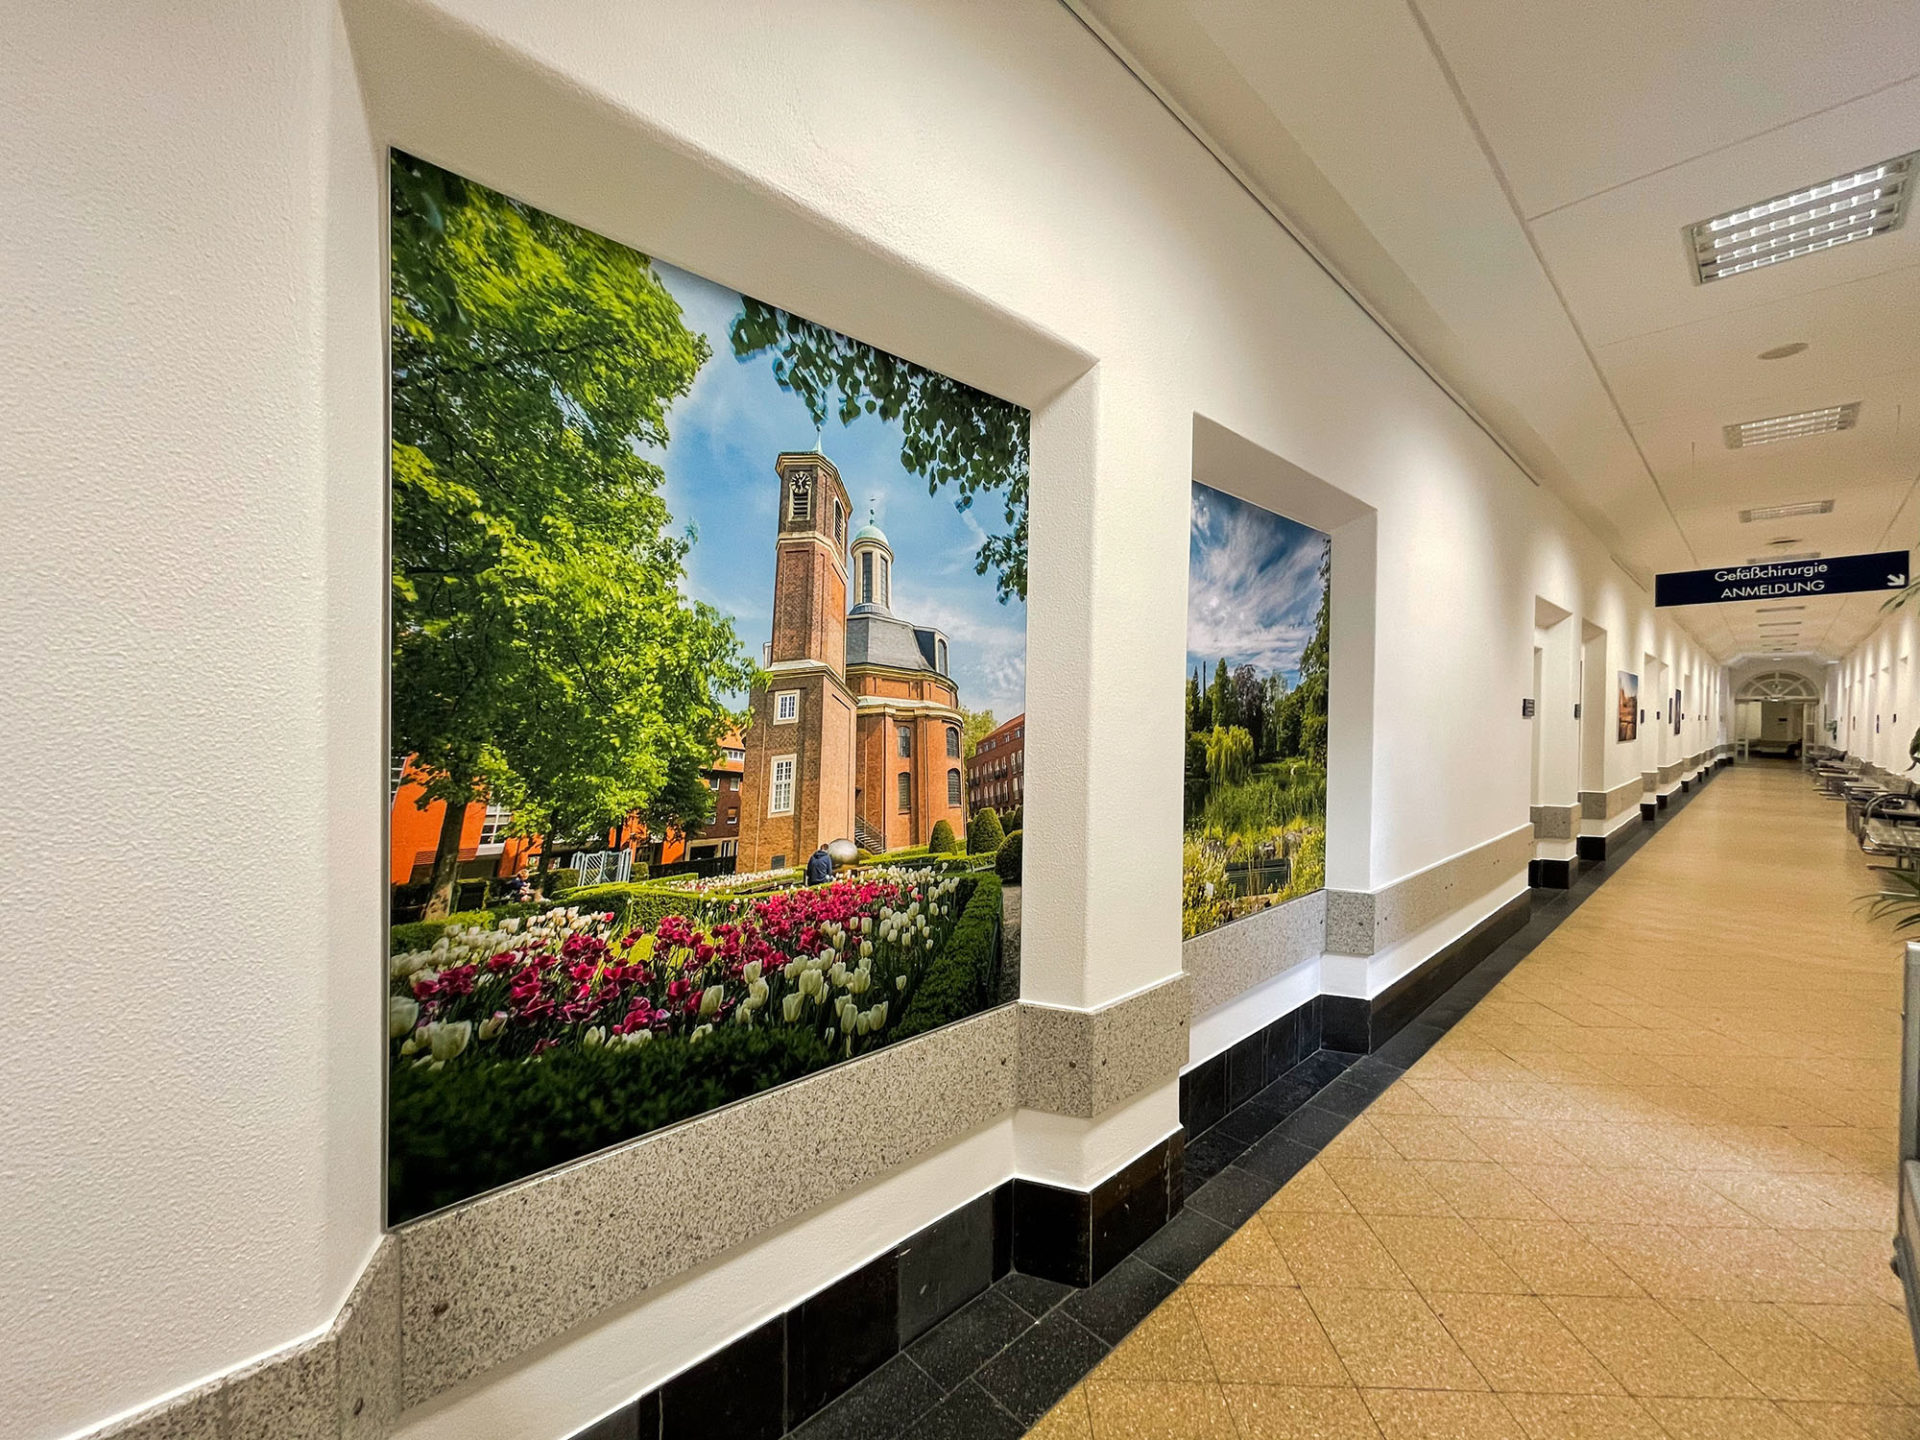 Ein langer Flur im Franziskushospital mit Bildern von feine art mit Münster-Motiven an den Wänden